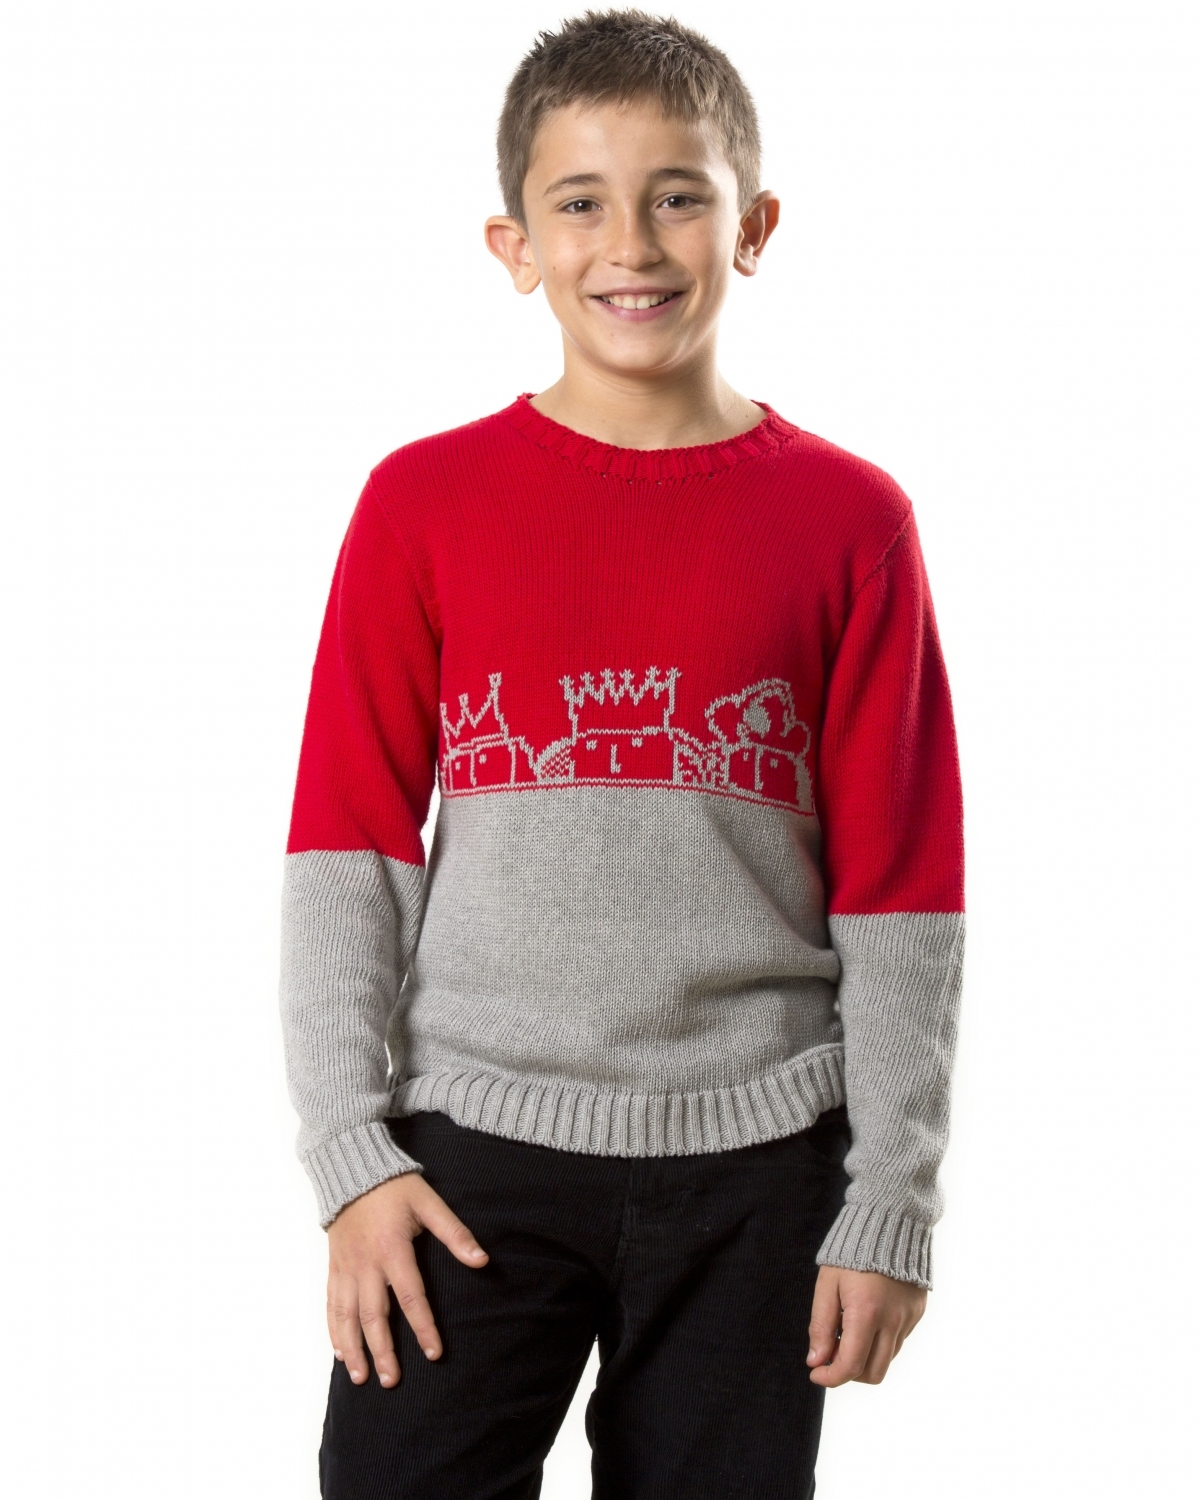 Un dels models de jersei disponibles